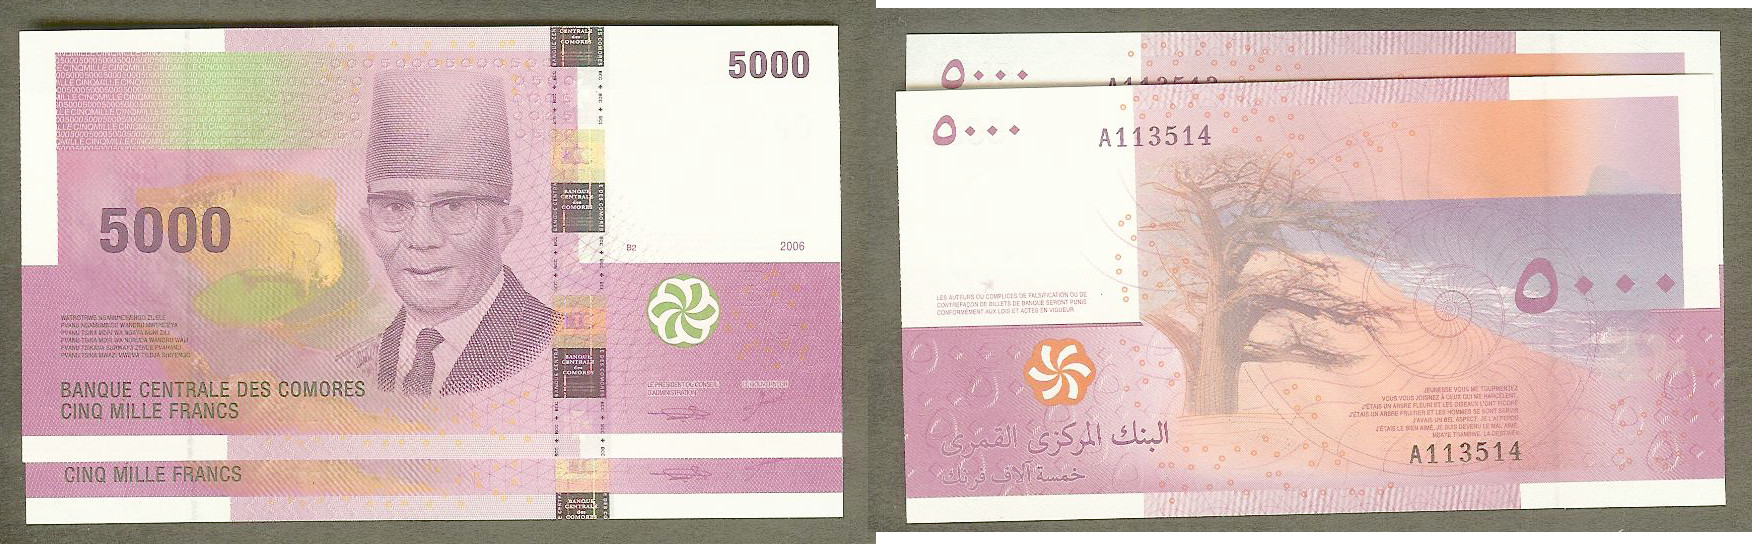 Comoros 5000 francs 2006 2X New